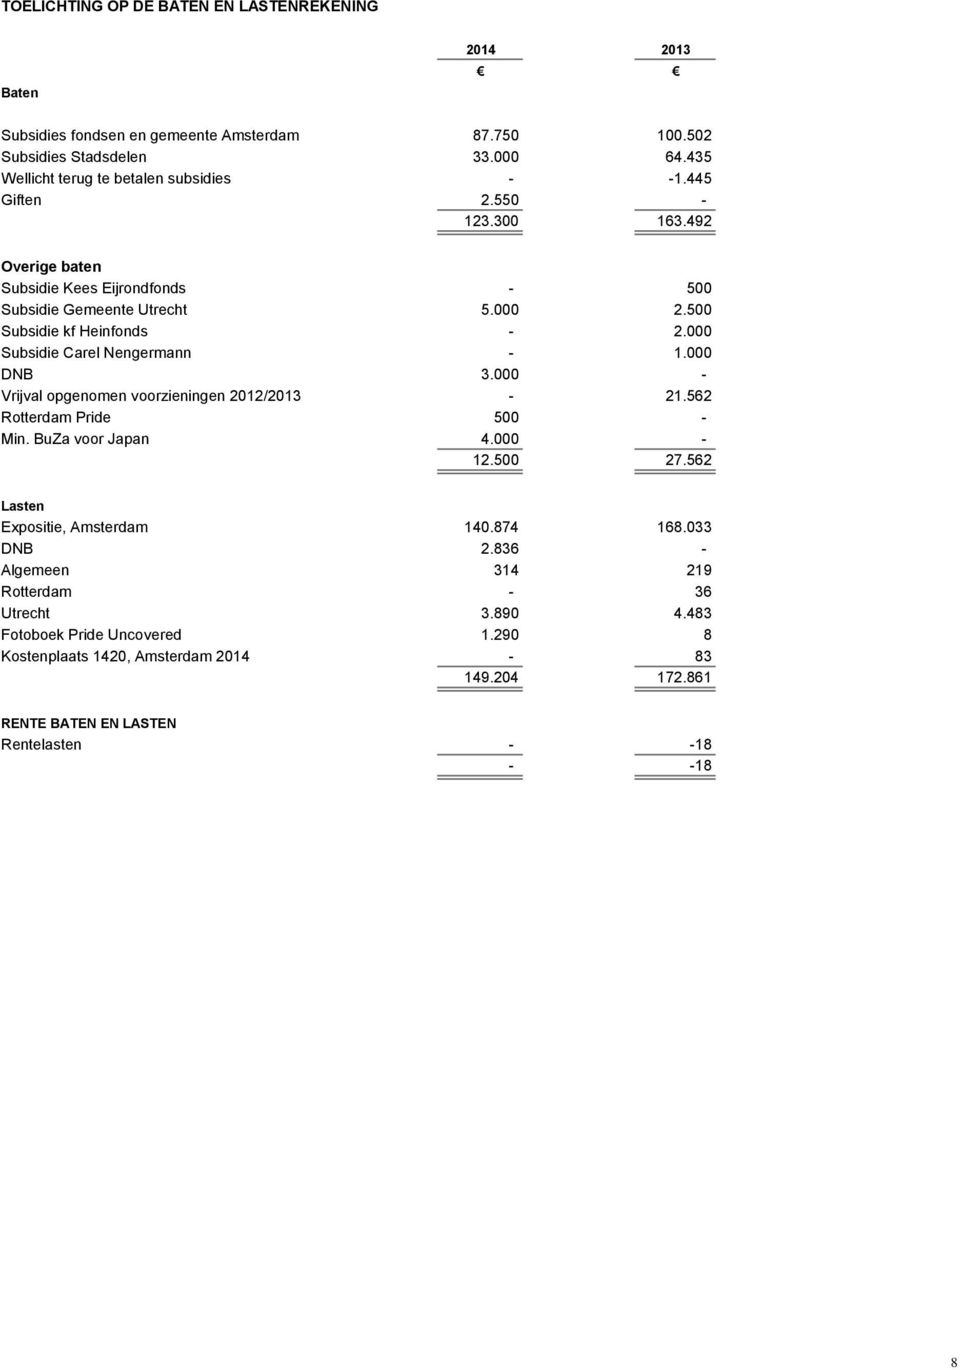 500 Subsidie kf Heinfonds - 2.000 Subsidie Carel Nengermann - 1.000 DNB 3.000 - Vrijval opgenomen voorzieningen 2012/2013-21.562 Rotterdam Pride 500 - Min. BuZa voor Japan 4.000-12.